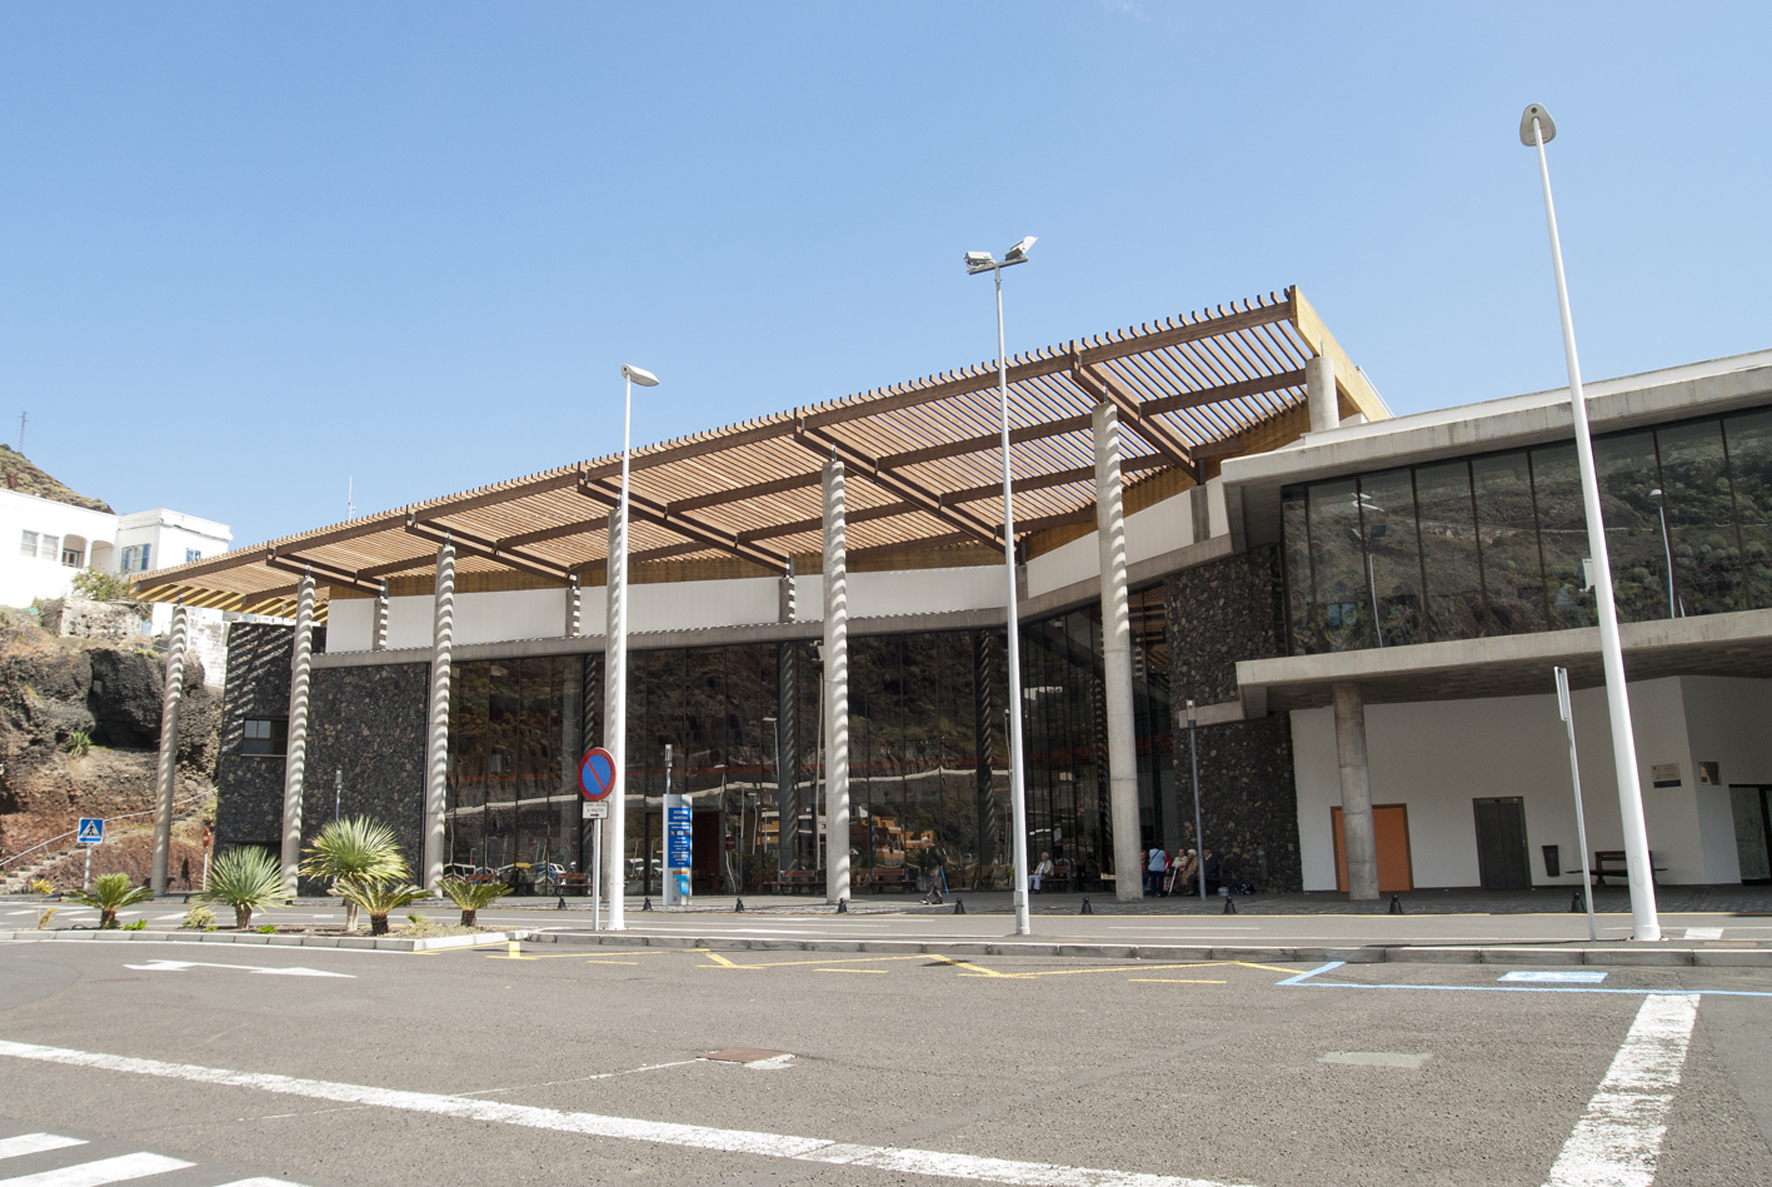 Puertos de Tenerife licitará diversas obras en el Puerto de La Estaca por valor de 580.000 euros